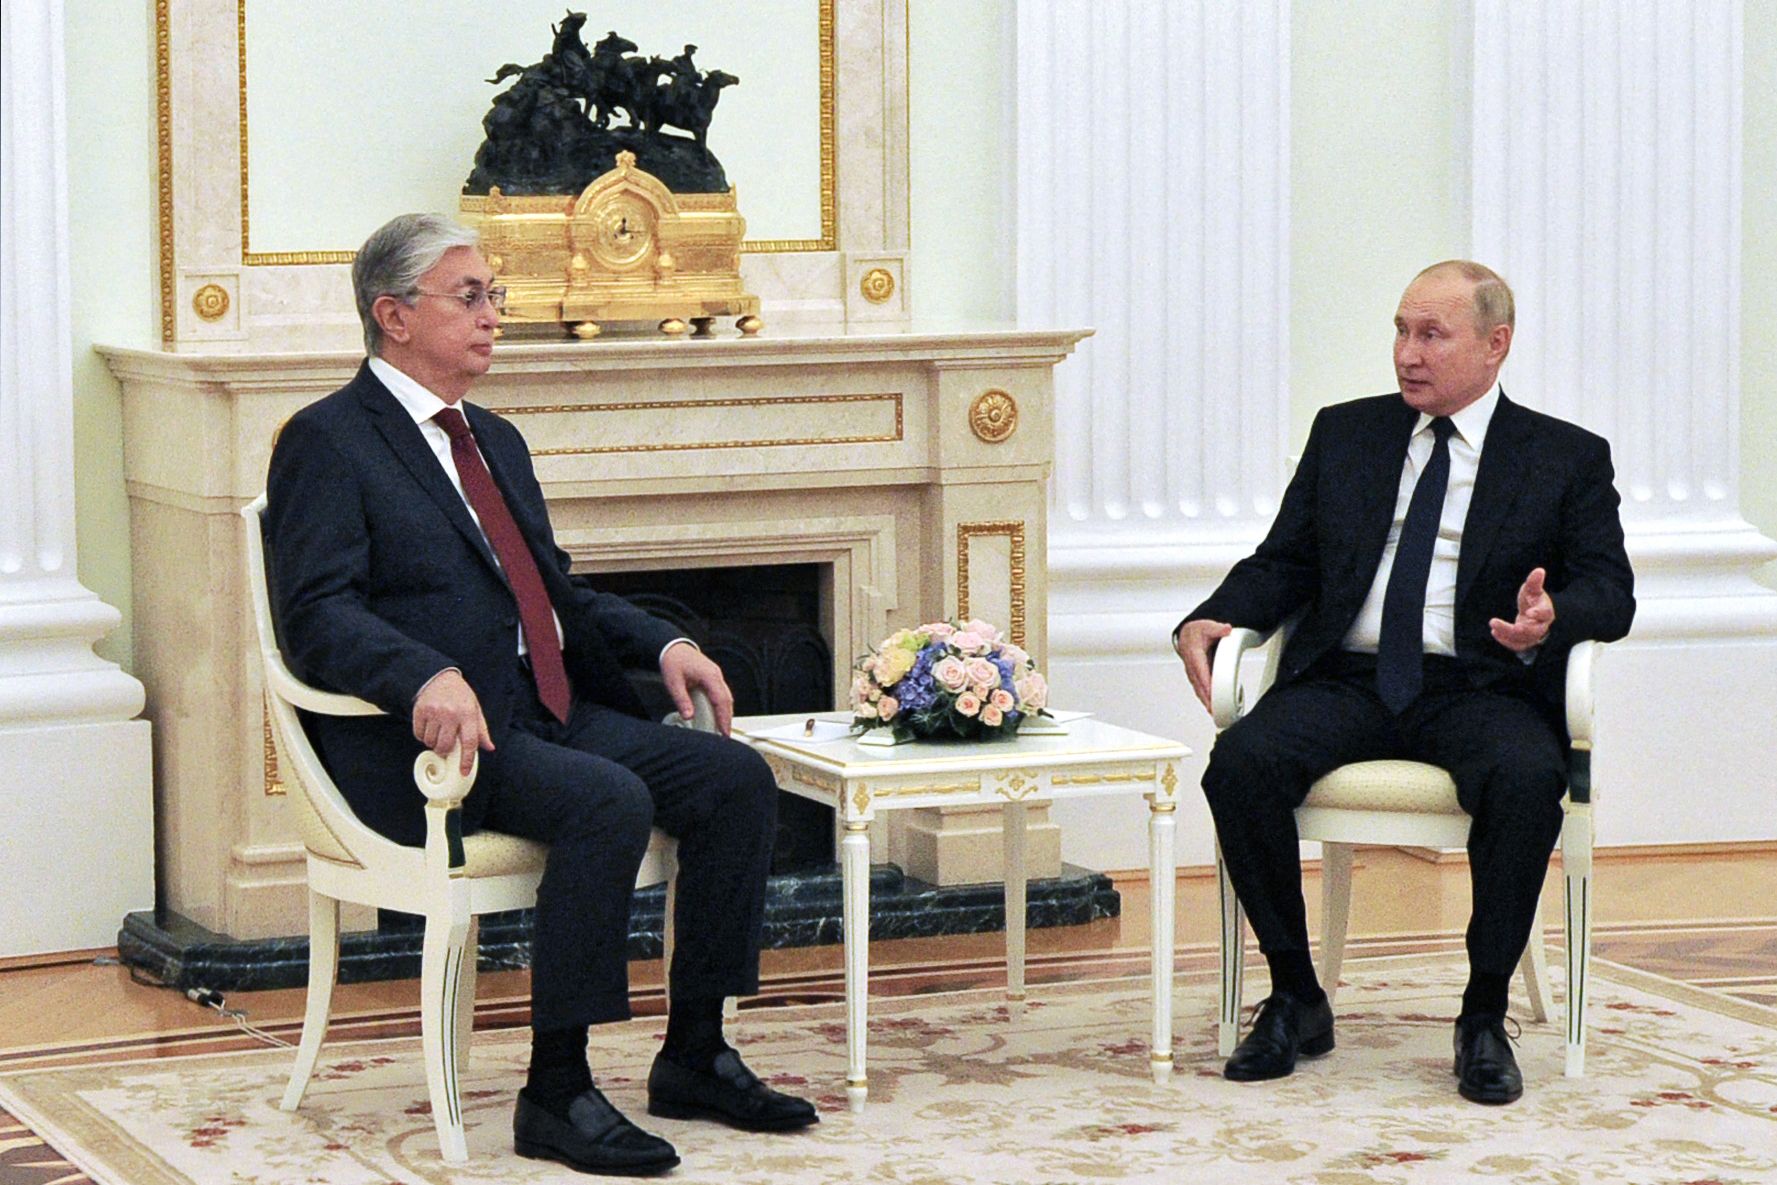 ՌԴ նախագահն առաջարկել է ստեղծել Ռուսաստանի, Ղազախստանի և Ուզբեկստանի եռամիություն. Տոկաև